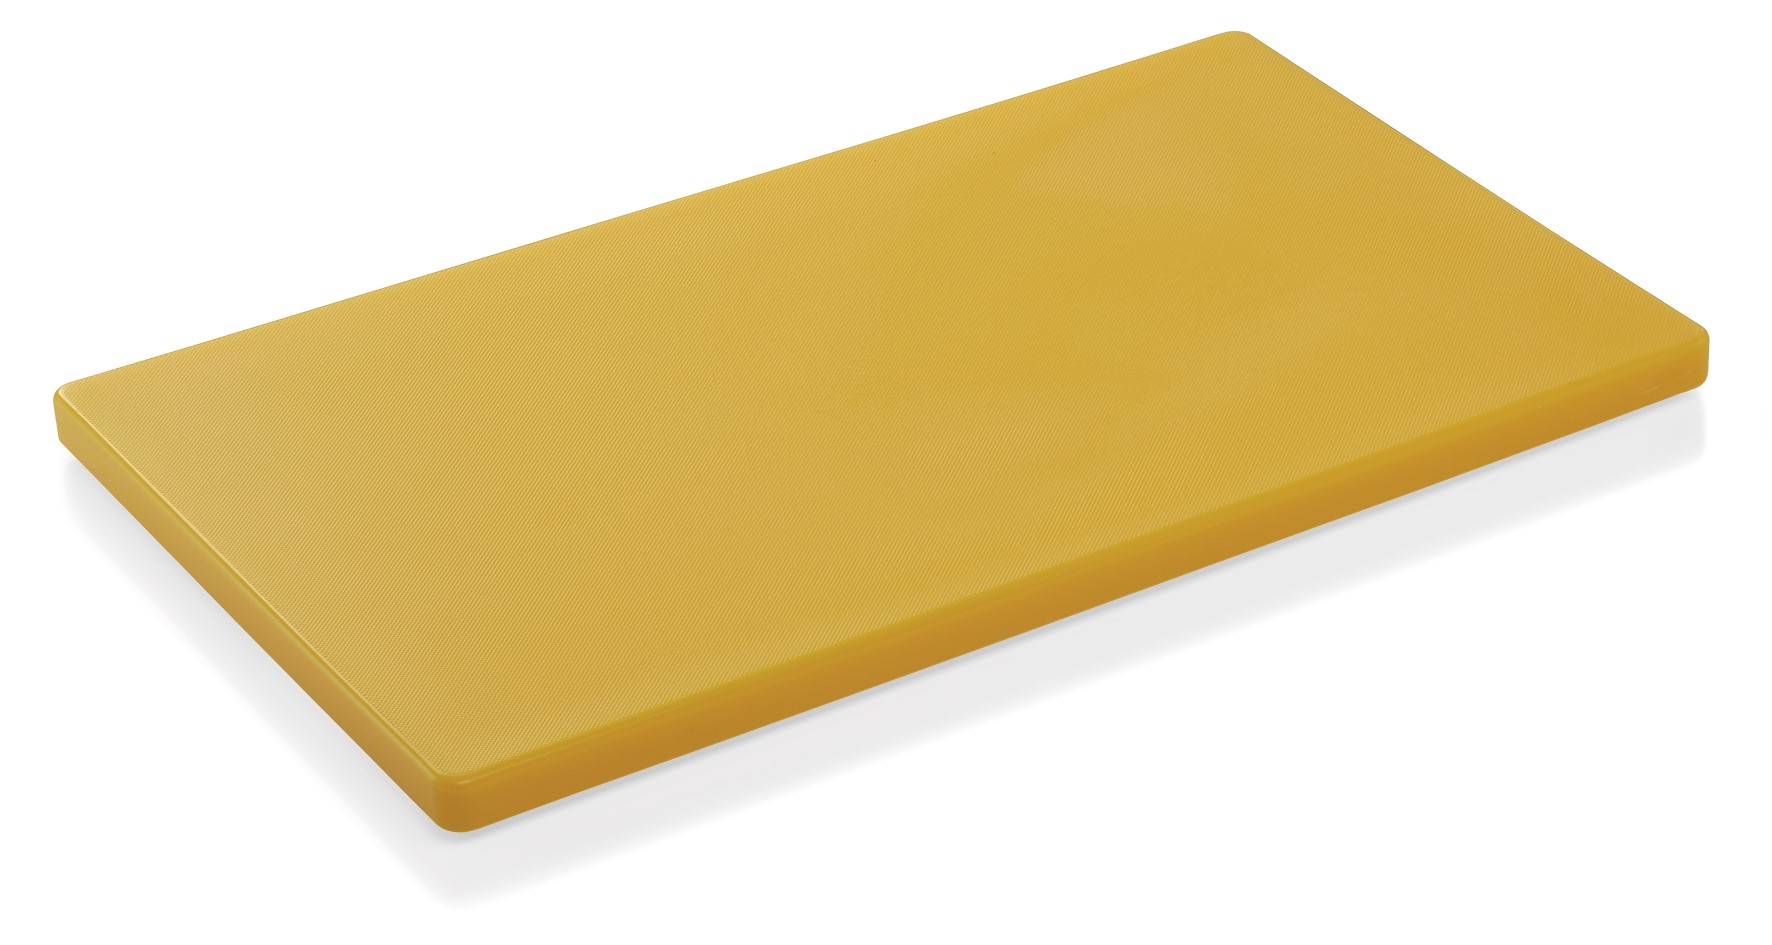 Schneidebrett aus Kunststoff - 60 x 40 x 2 cm in verschiedenen Farben Gelb